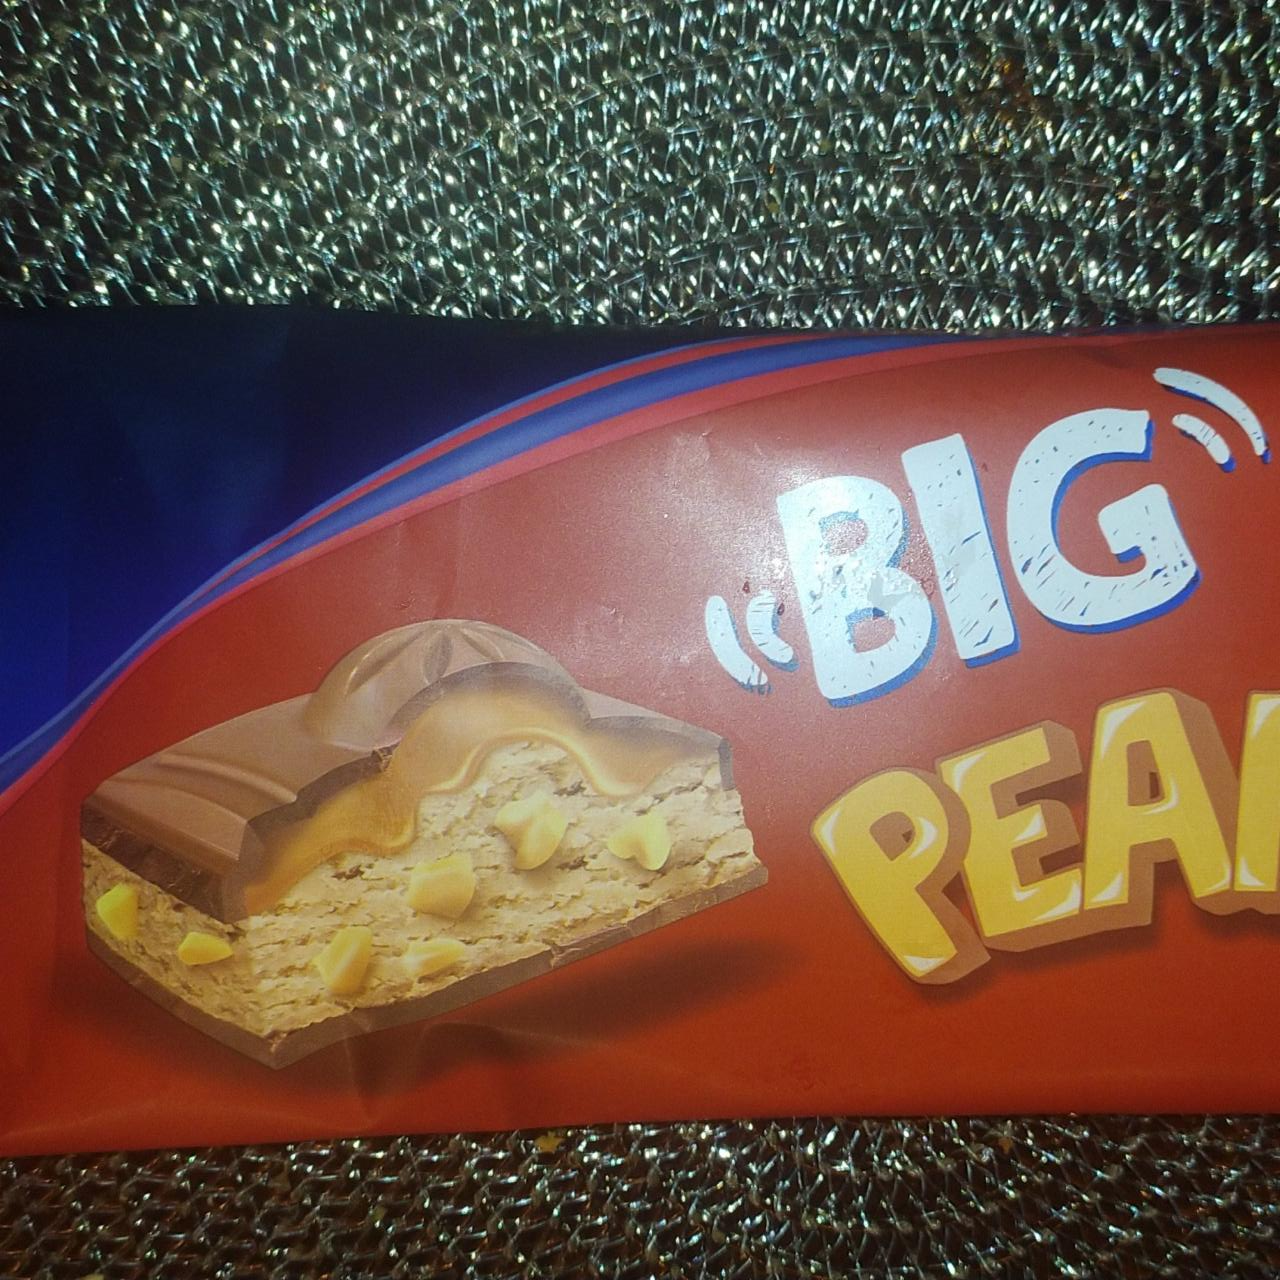 Фото - Шоколад Big peanut Magnetic